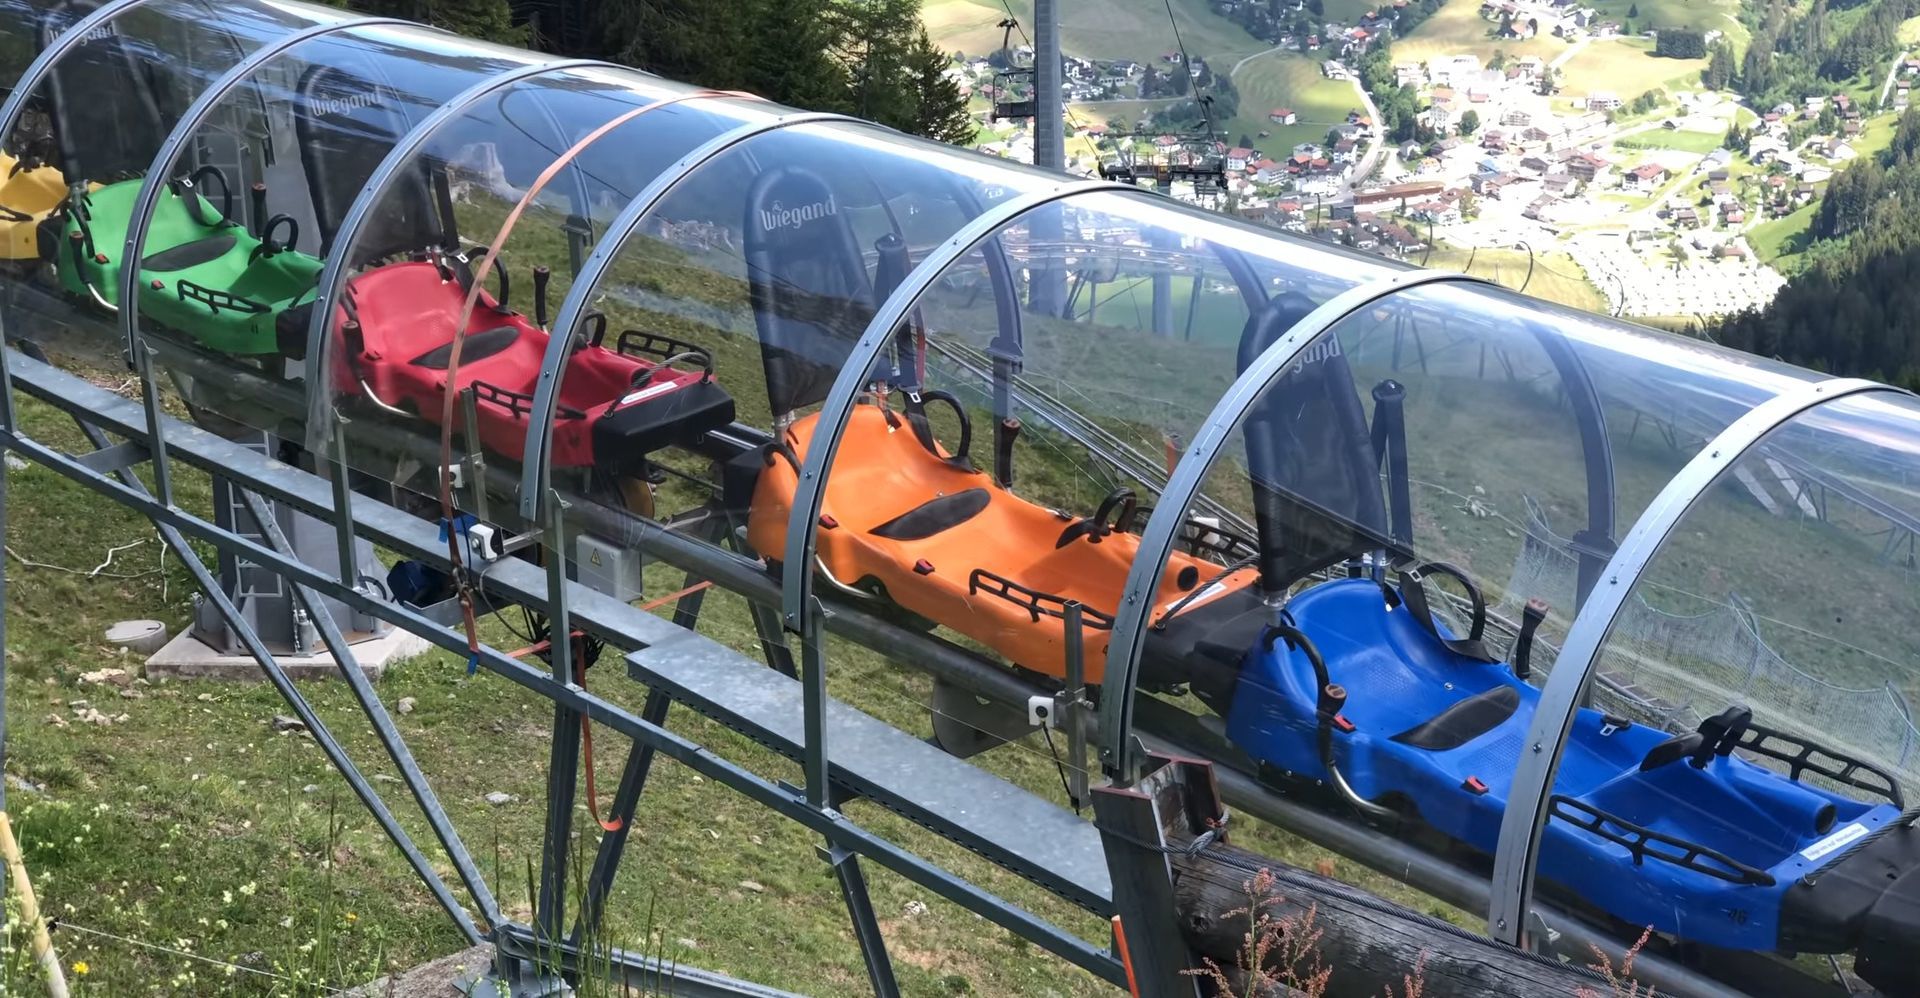 trineos de alpine coaster